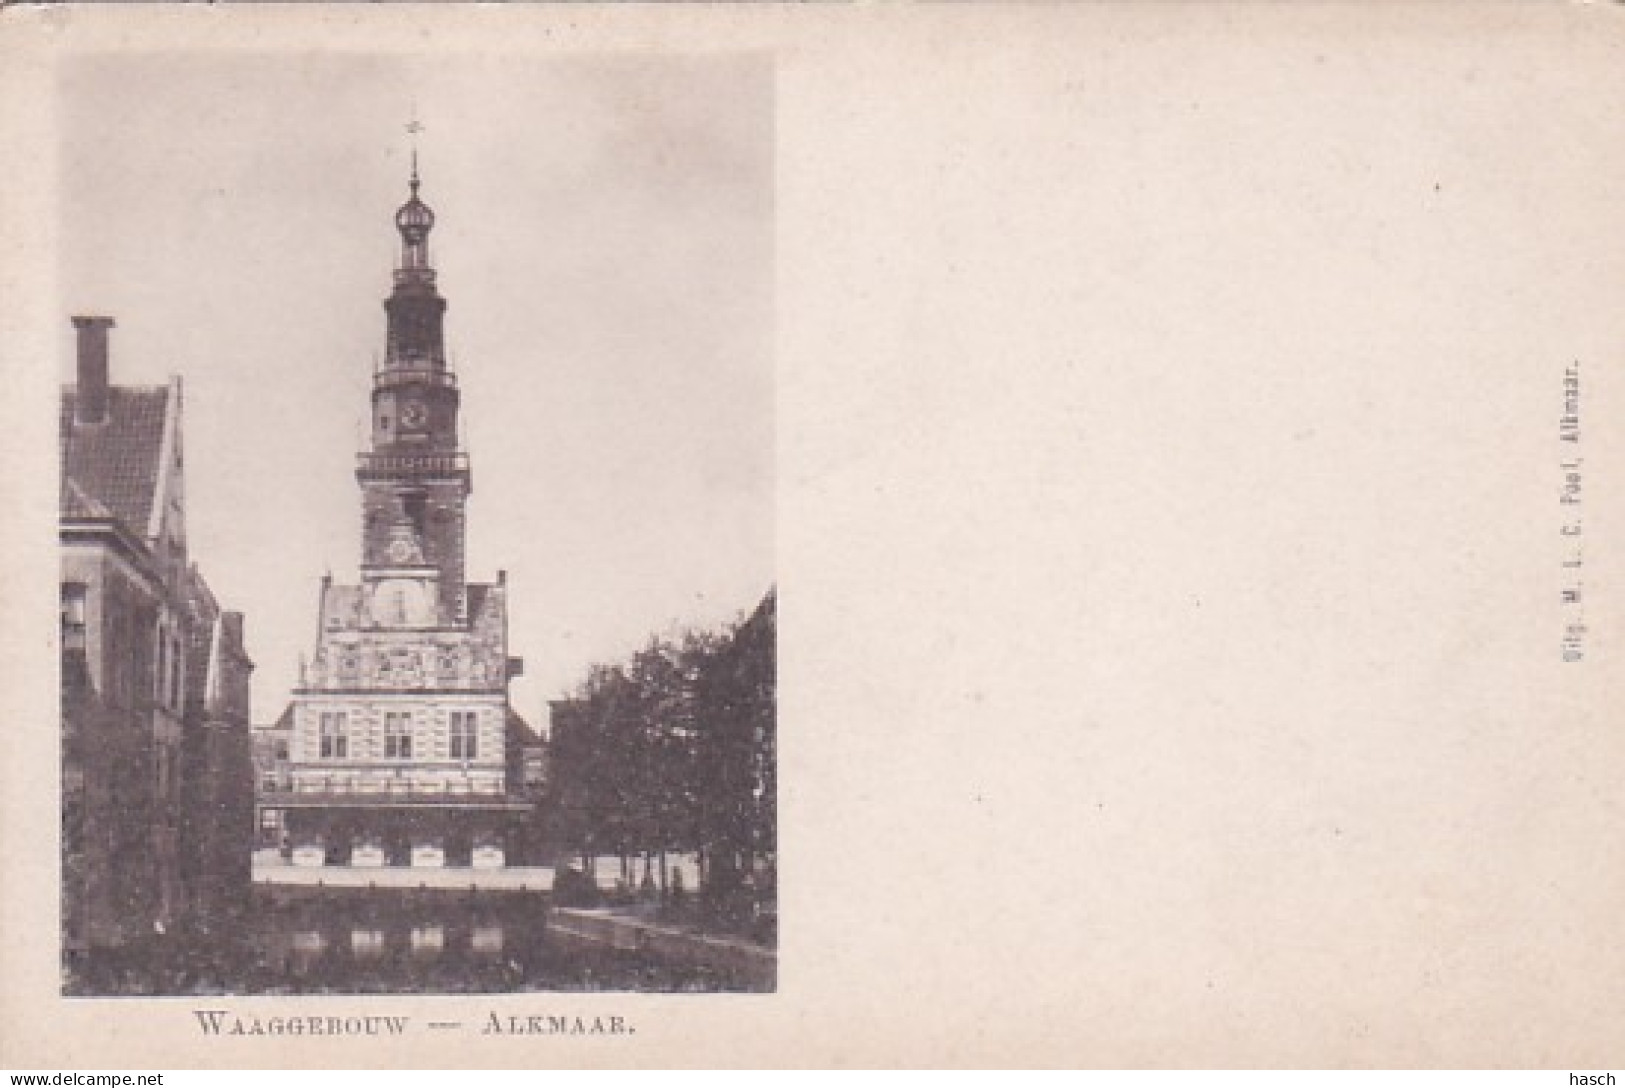 3765	83	Alkmaar, Waaggebouw Rond 1900 (kleine Vouwen In De Hoeken) - Alkmaar